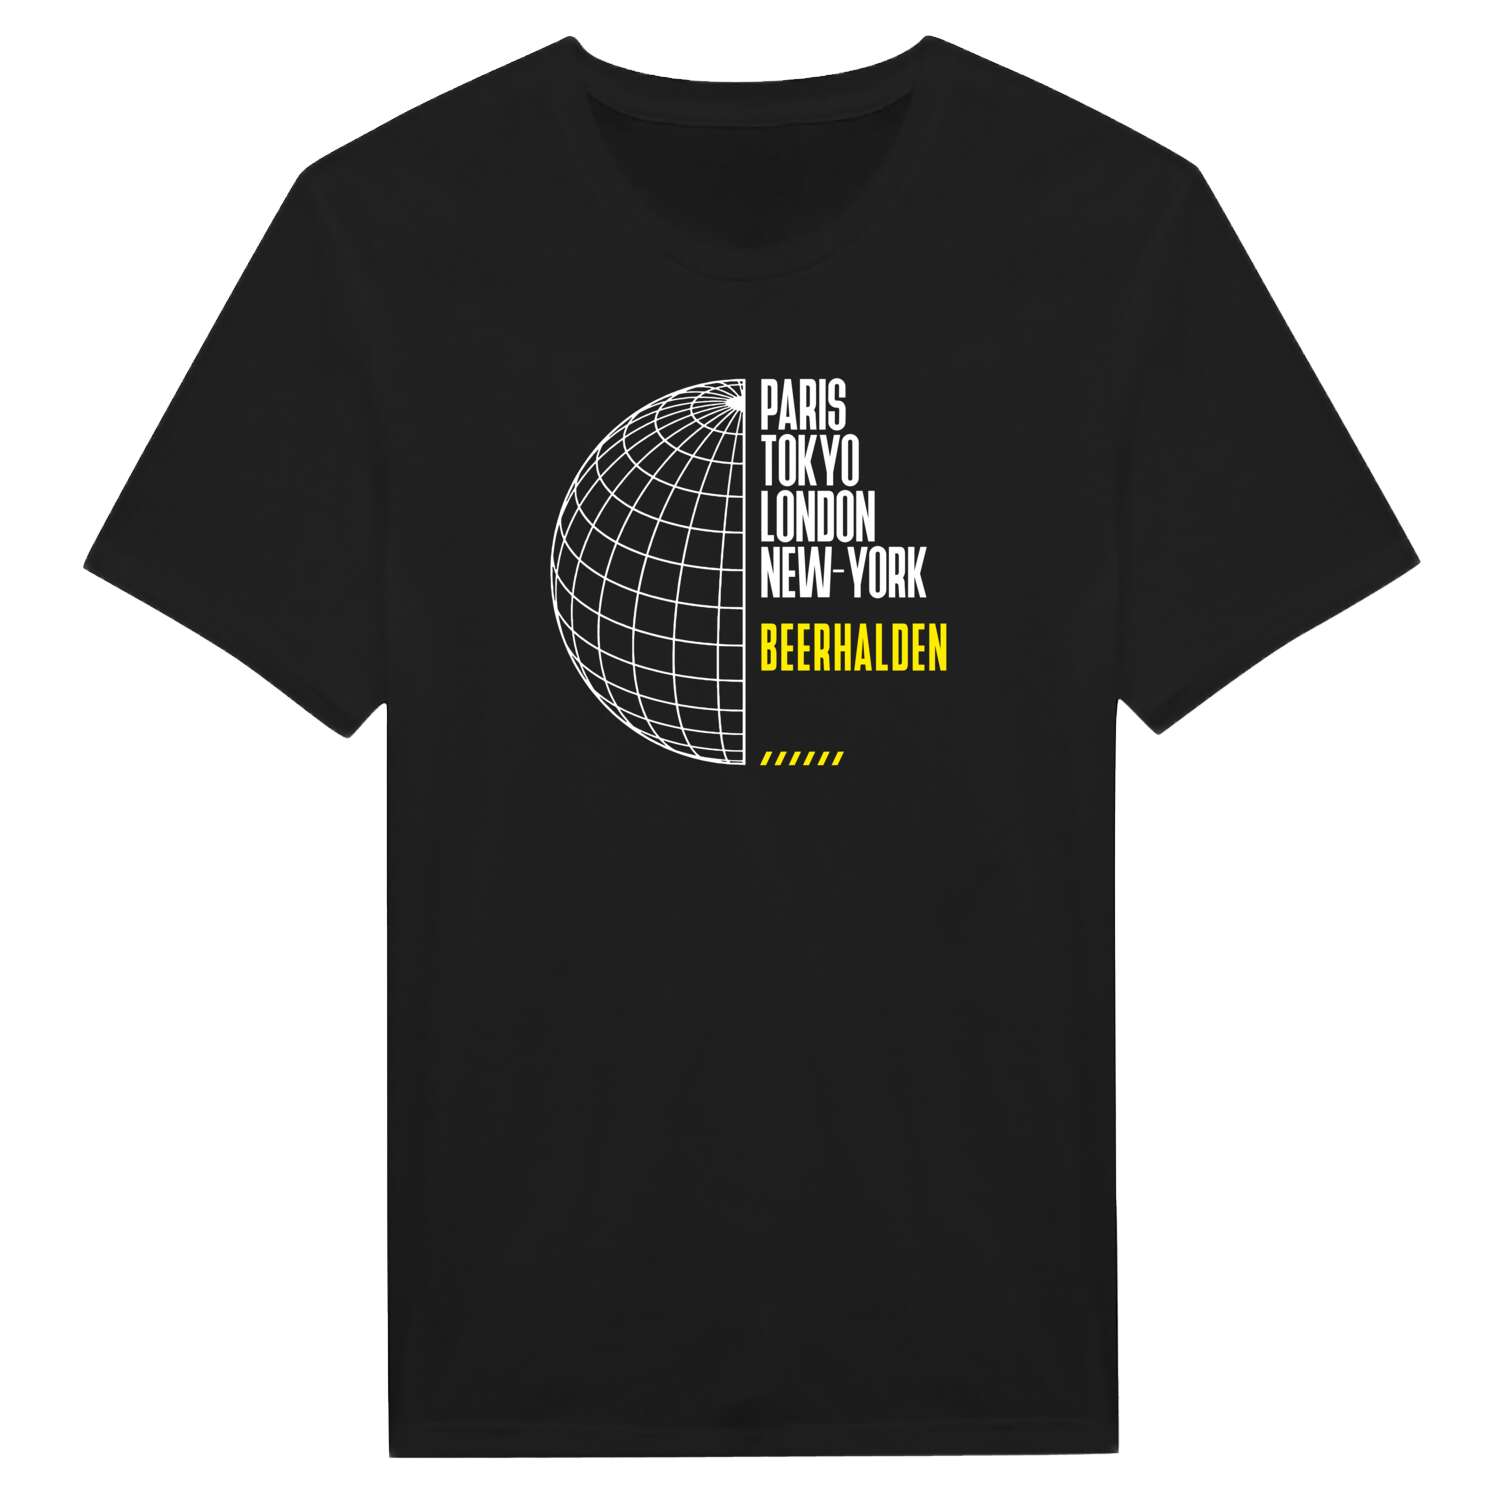 Beerhalden T-Shirt »Paris Tokyo London«